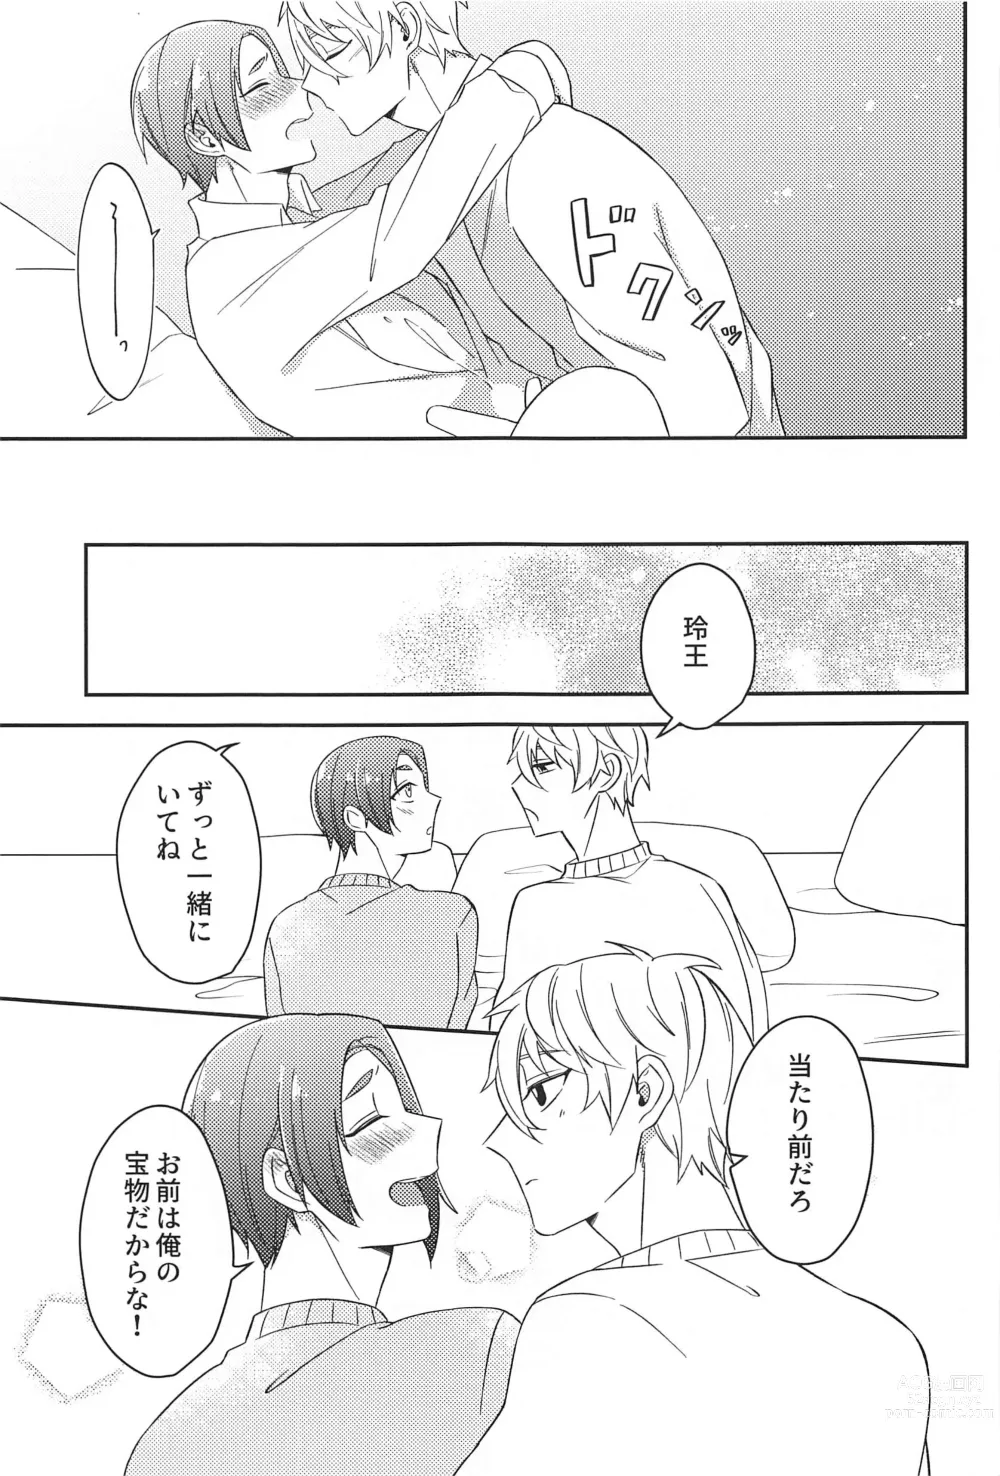 Page 24 of doujinshi Sore ni Namae o Tsukeru nara